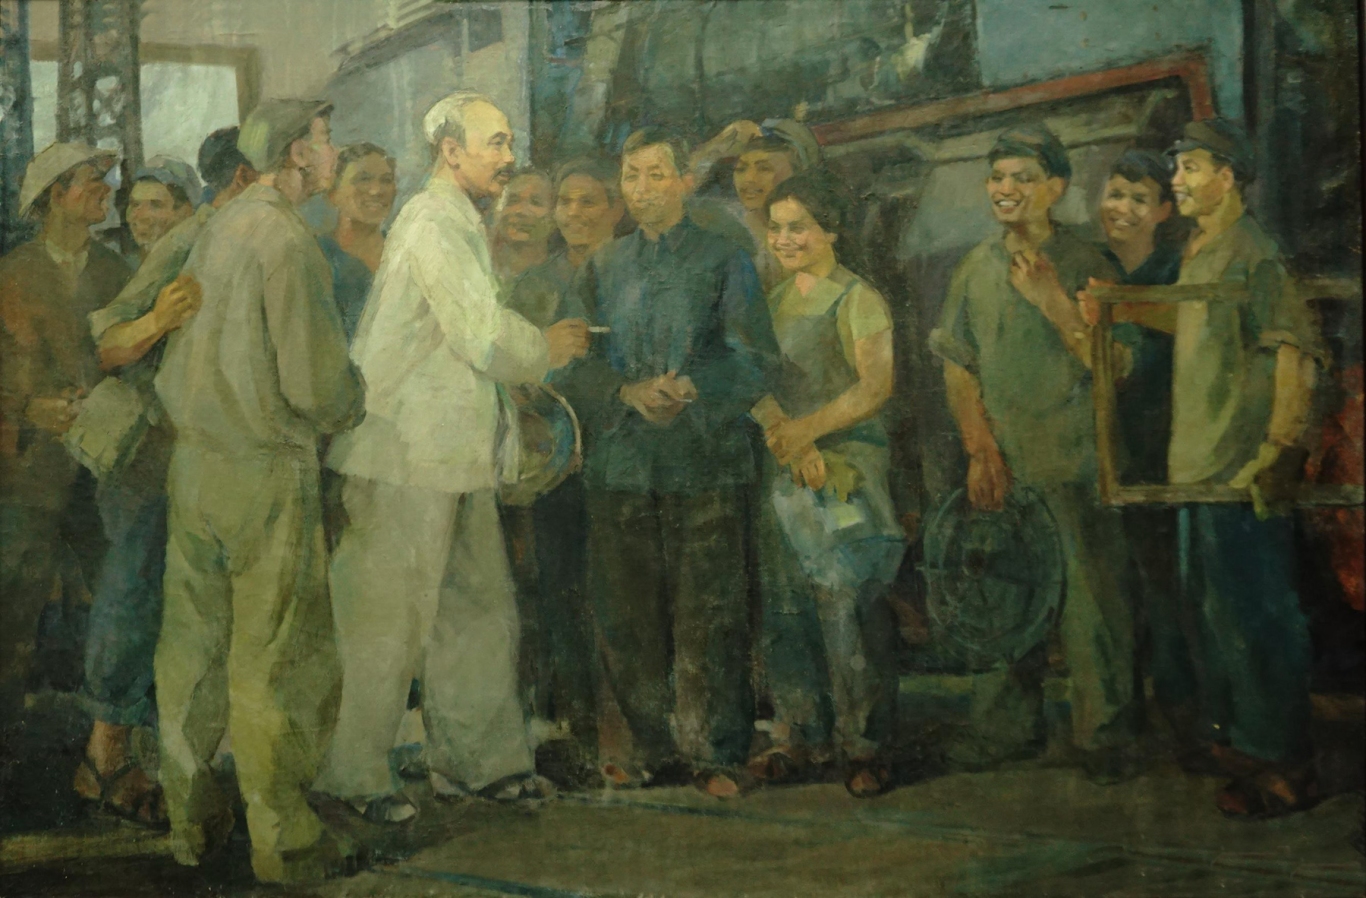 Tư tưởng Hồ Chí Minh và việc đối phó với chủ nghĩa tư bản?
